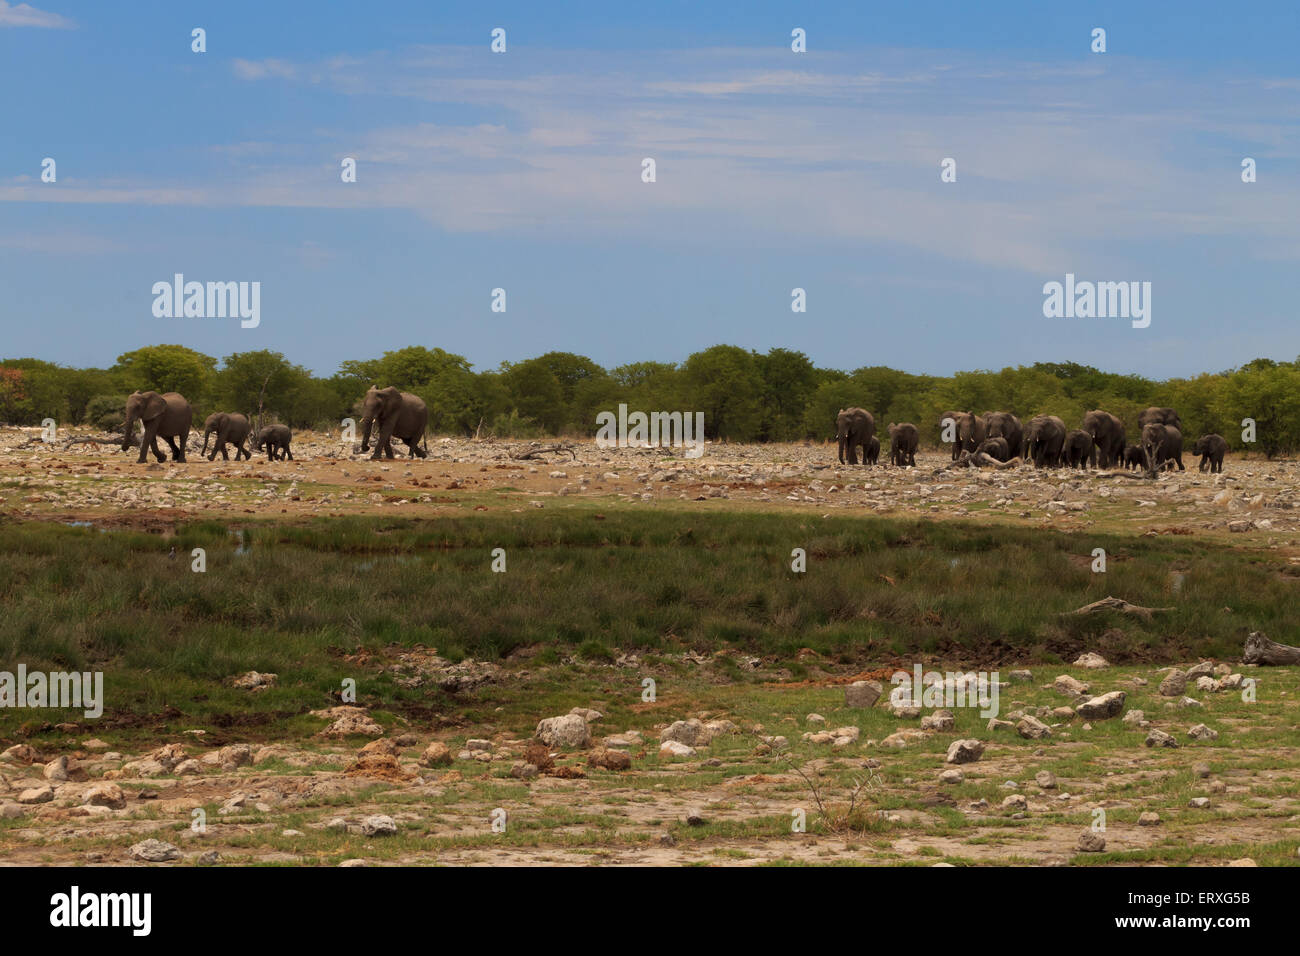 Herd of elephants from Etosha National Park, Namibia Stock Photo